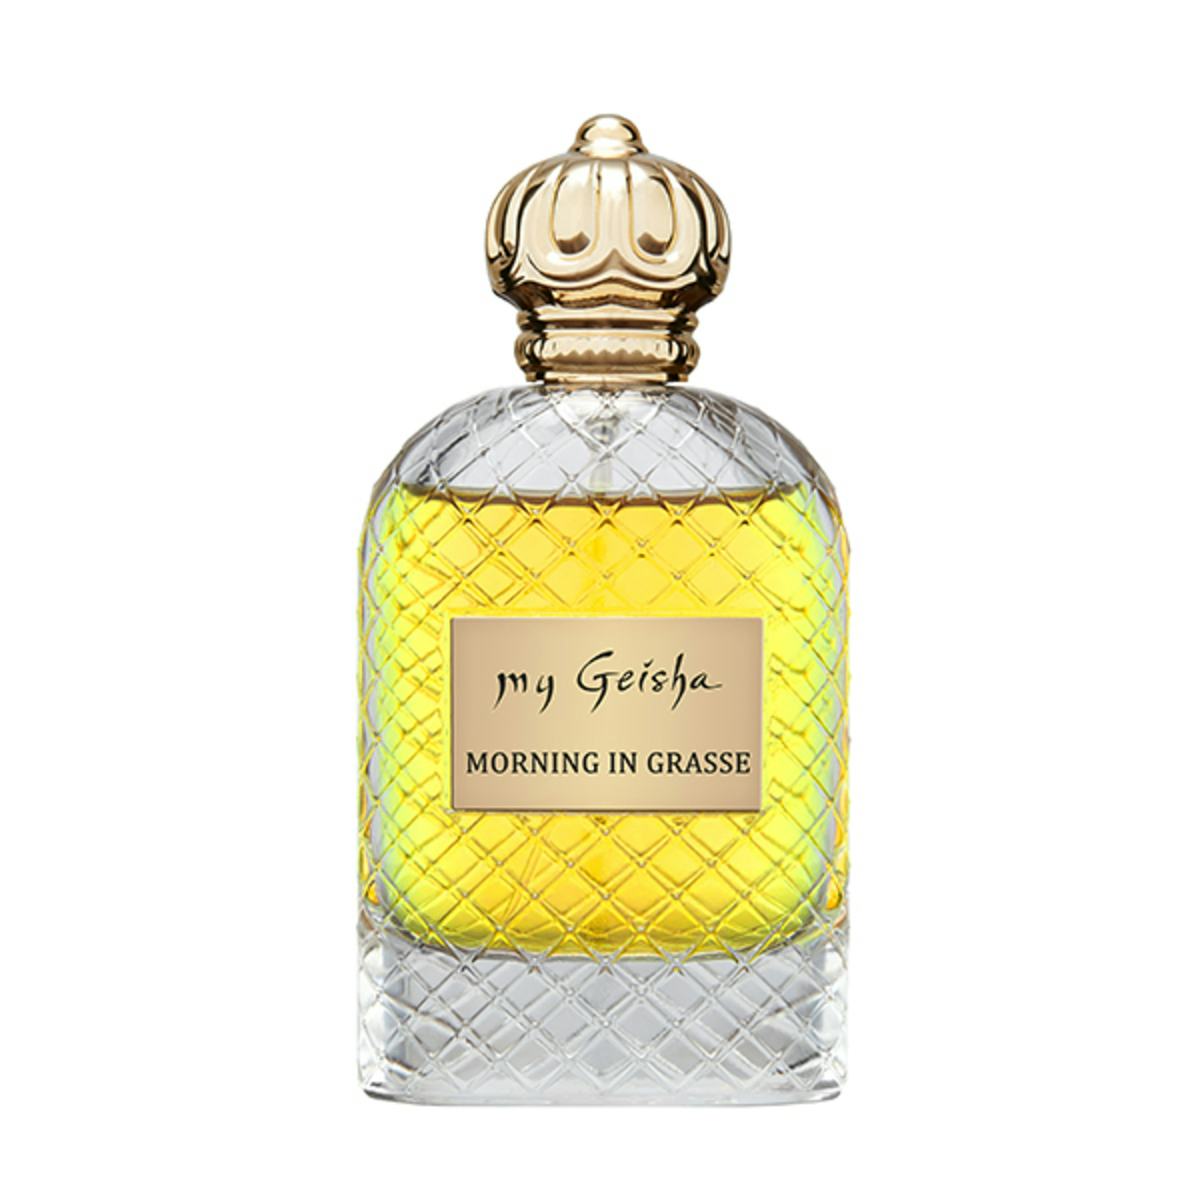 Extrait de parfum "Morning in Grasse" 100 ml, produit artisanal en vente directe en Suisse